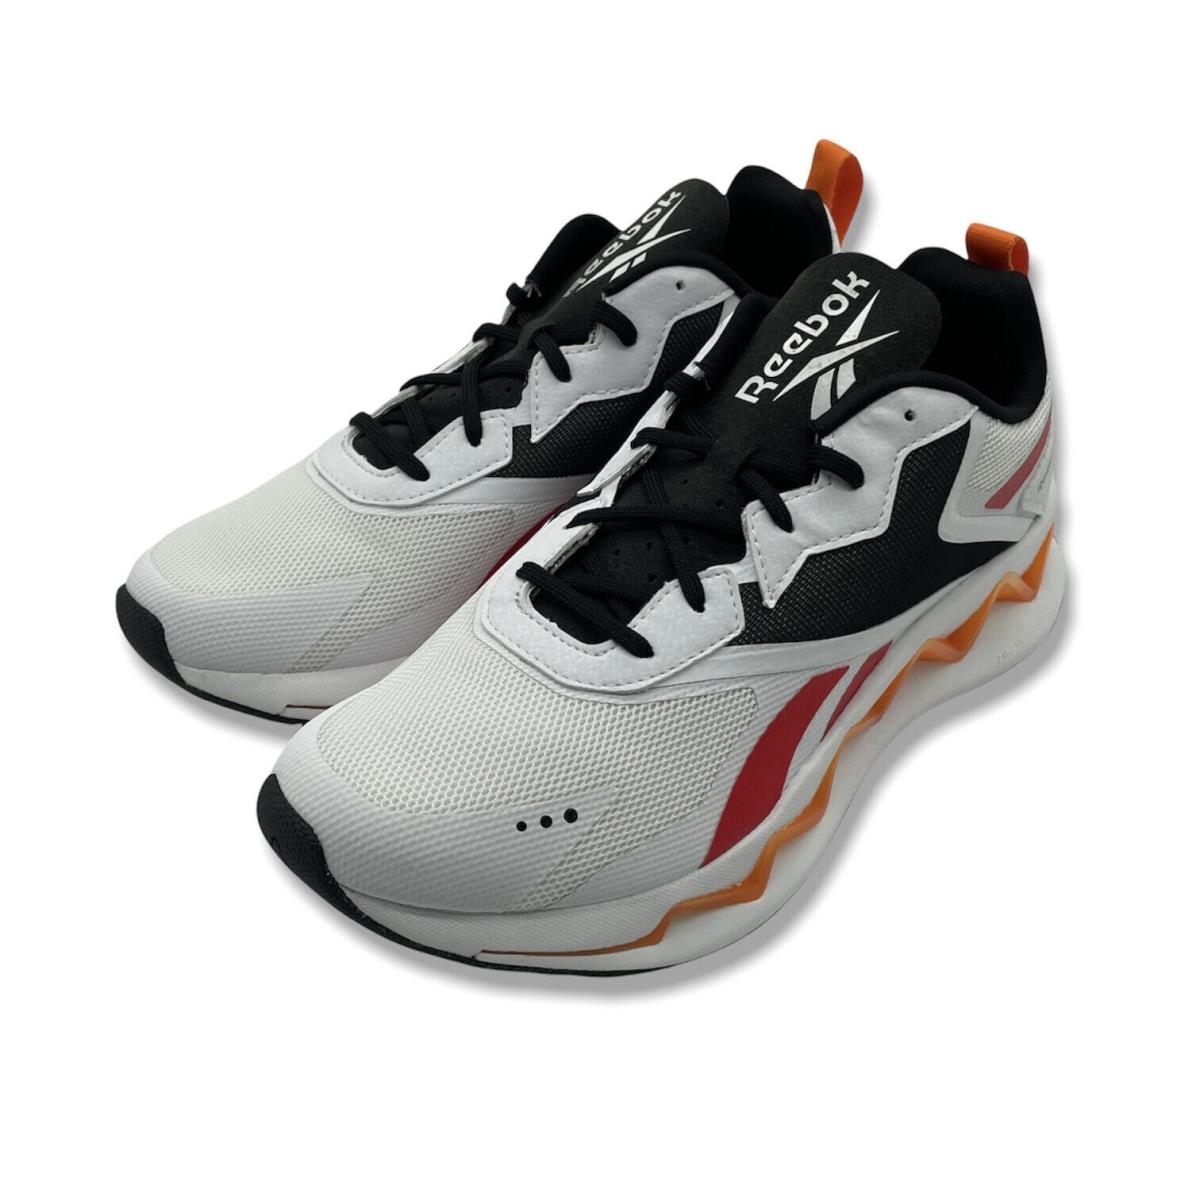 Reebok Unisex Adults White FV3838 Zig Elusion Energy Running Shoes Size US 9